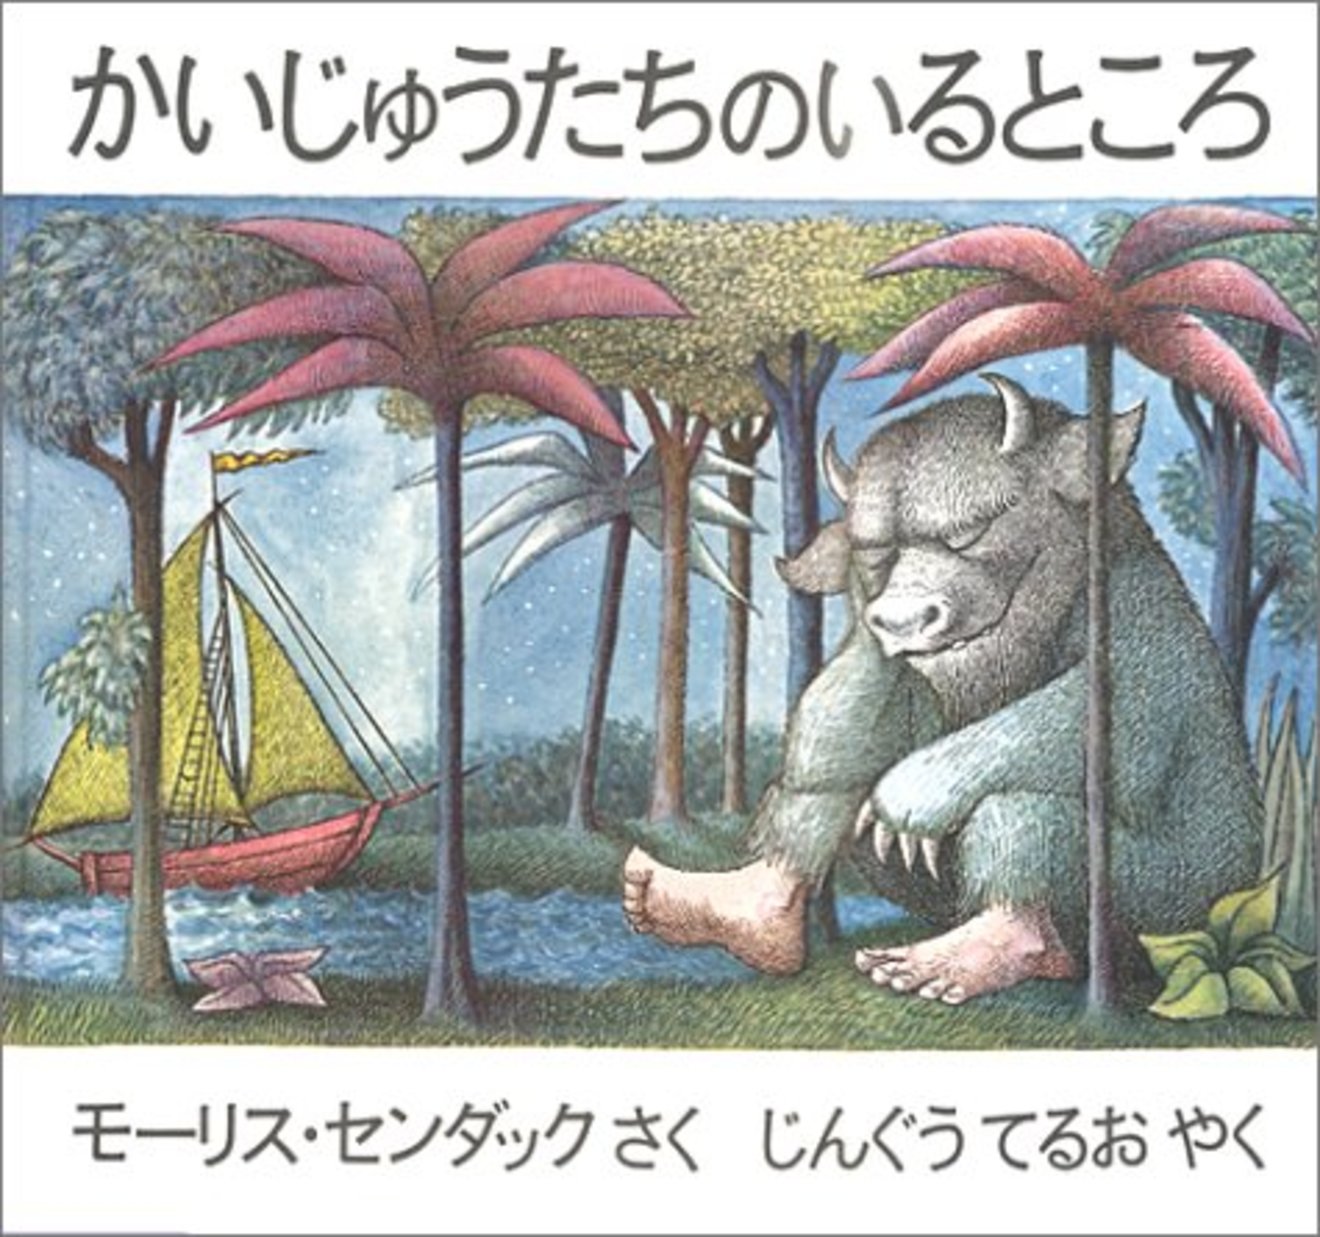 モーリス センダックのおすすめ絵本5選 想像力が豊かになる 絵本 児童書も ホンシェルジュ